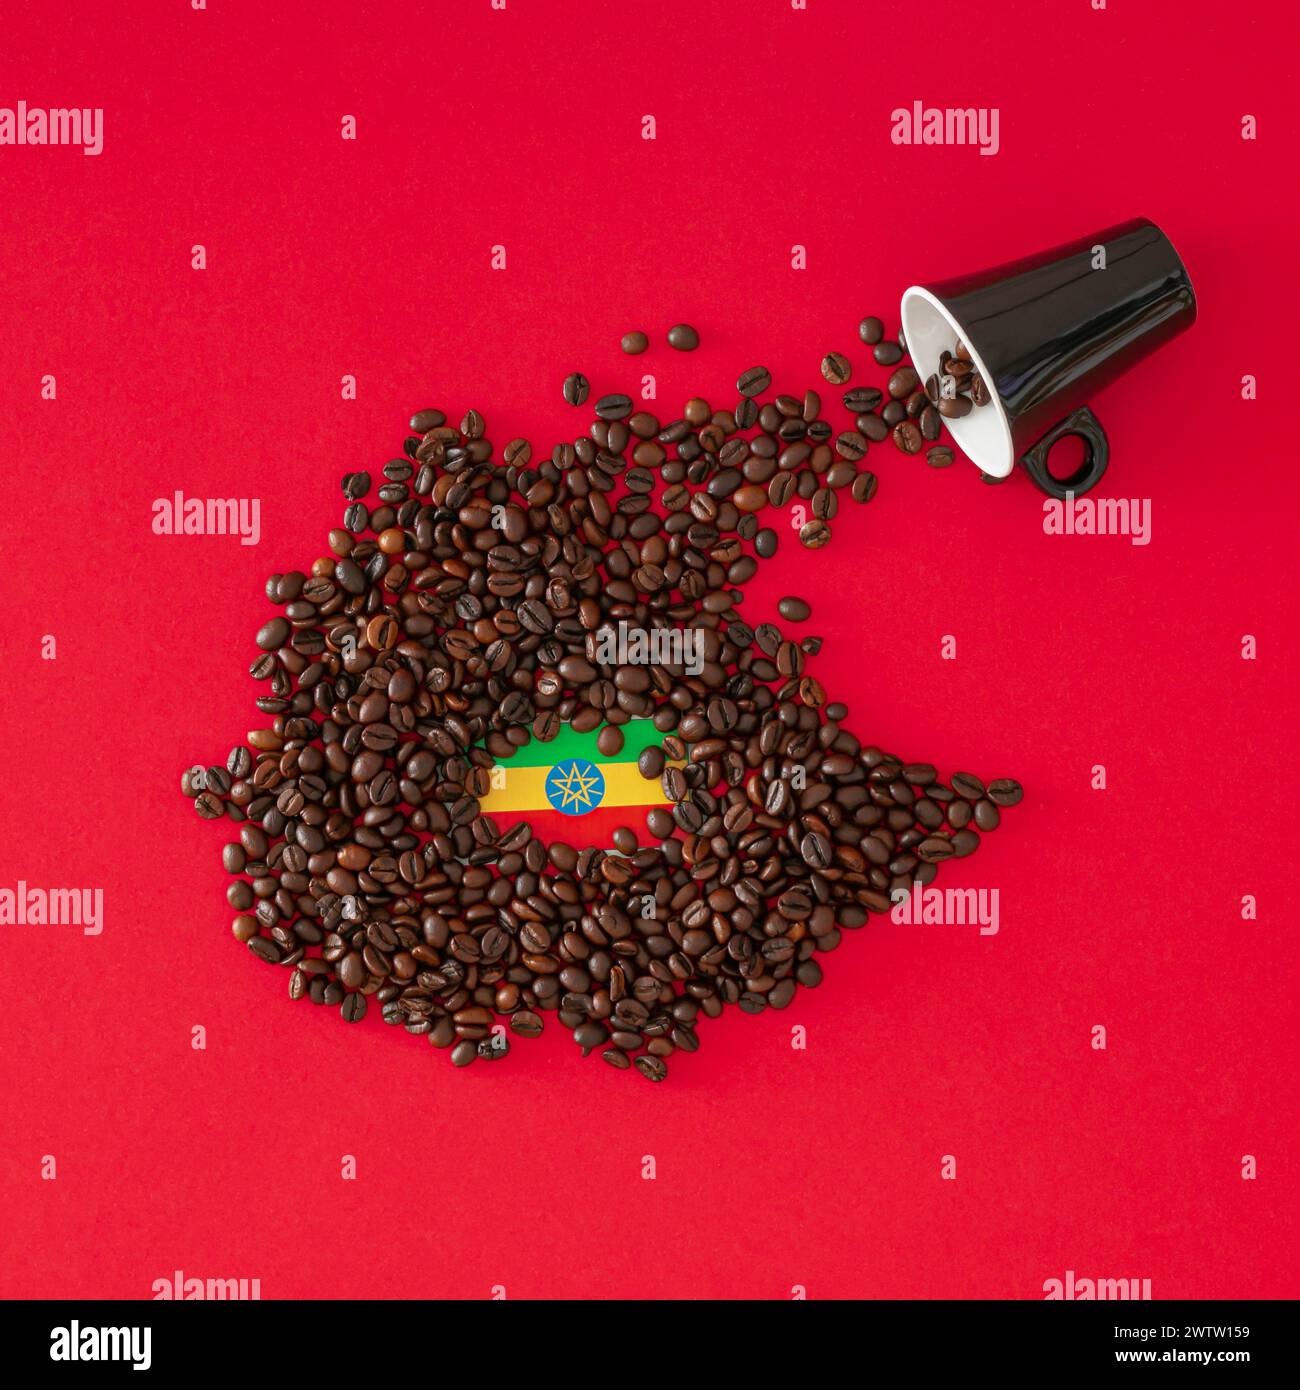 Composizione creativa realizzata con tazza di caffè, mappa dell'Etiopia realizzata con chicchi di caffè tostati e bandiera etiope su sfondo rosso. Layout minimo. Foto Stock